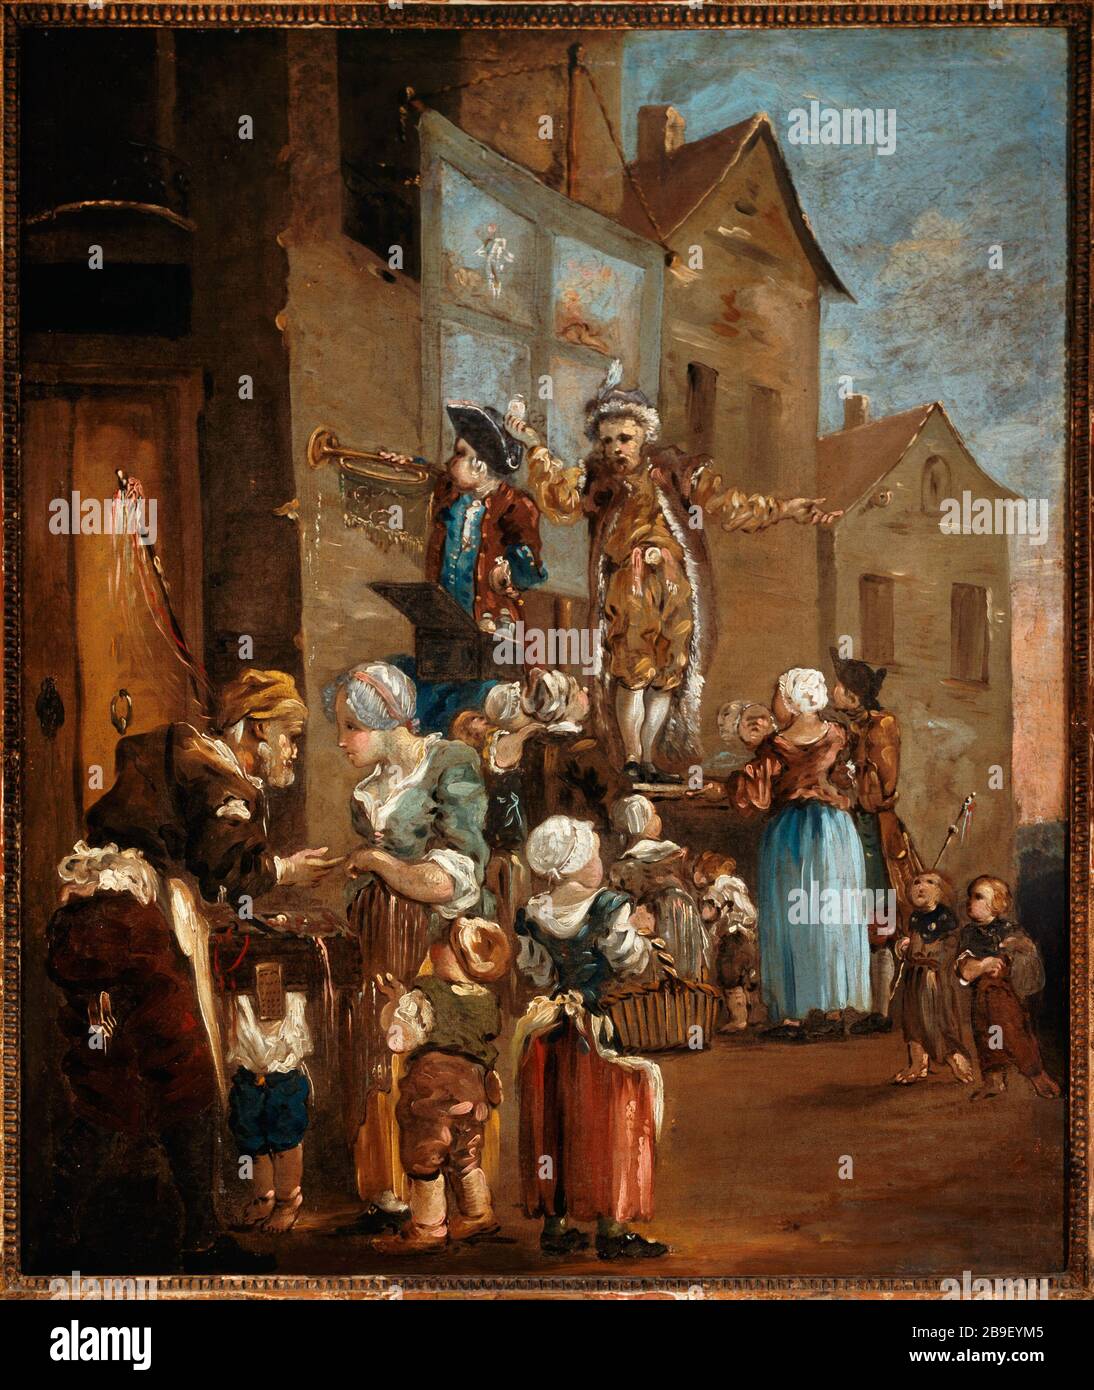 Le charlatan Anonyme. 'Le charlatan'. Huile sur toile, vers 1760. Paris, musée Carnavalet. Banque D'Images